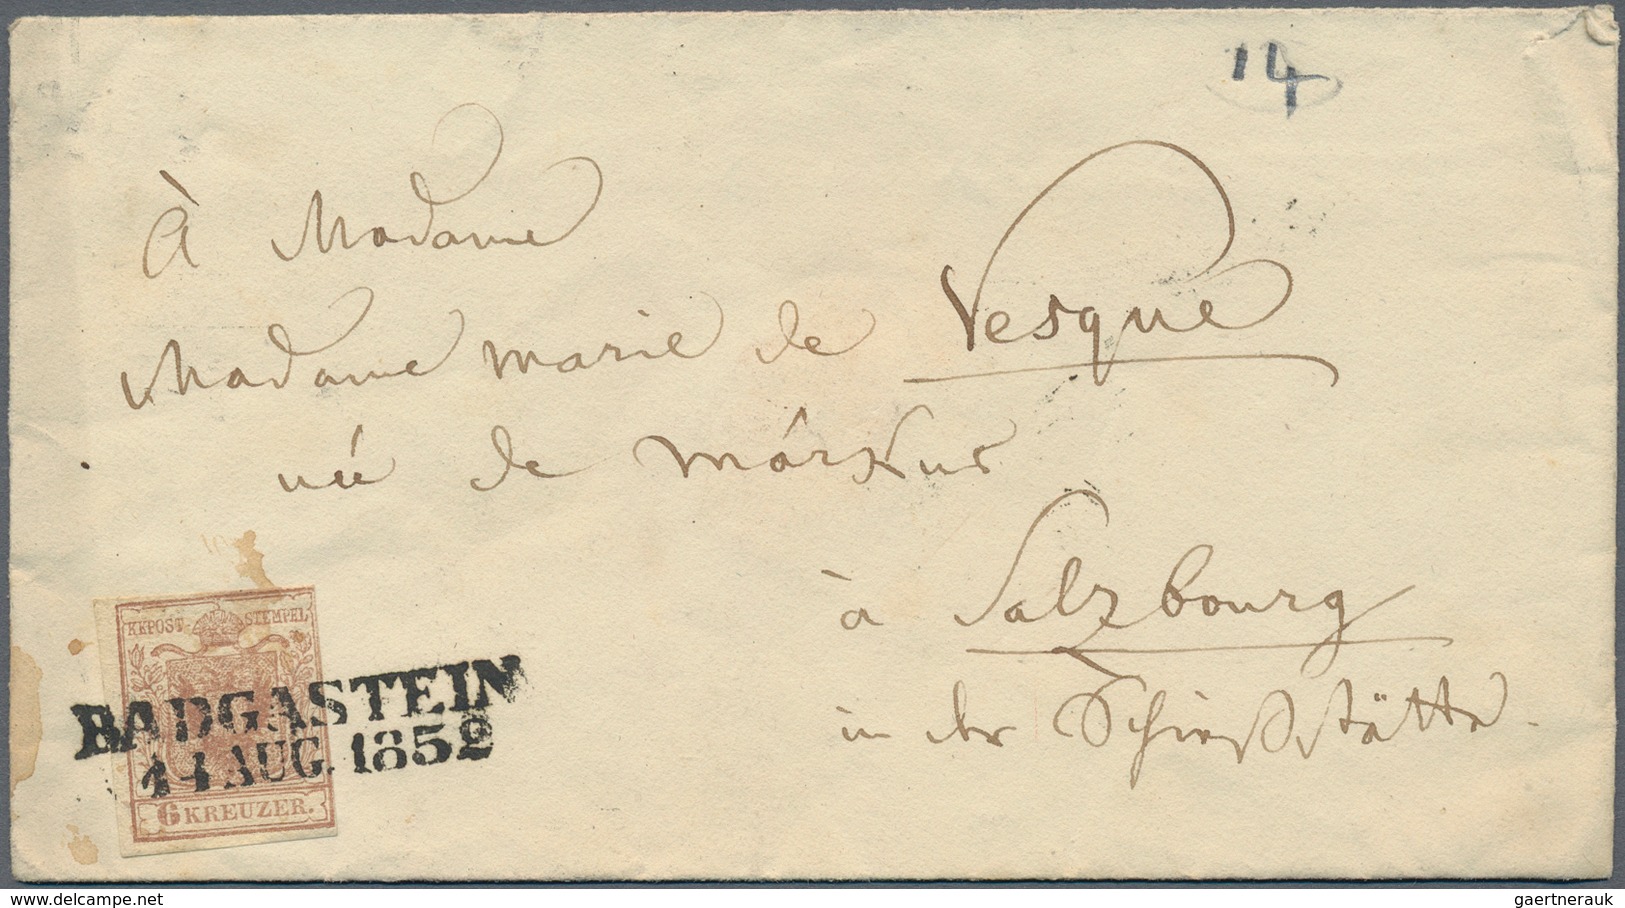 Österreich: 1852 - 1874, Posten Von 26 Belegen, U.a. Briefe Mit 3 Stück 6 Kreuzer-Ausgabe Von St. Pö - Sammlungen